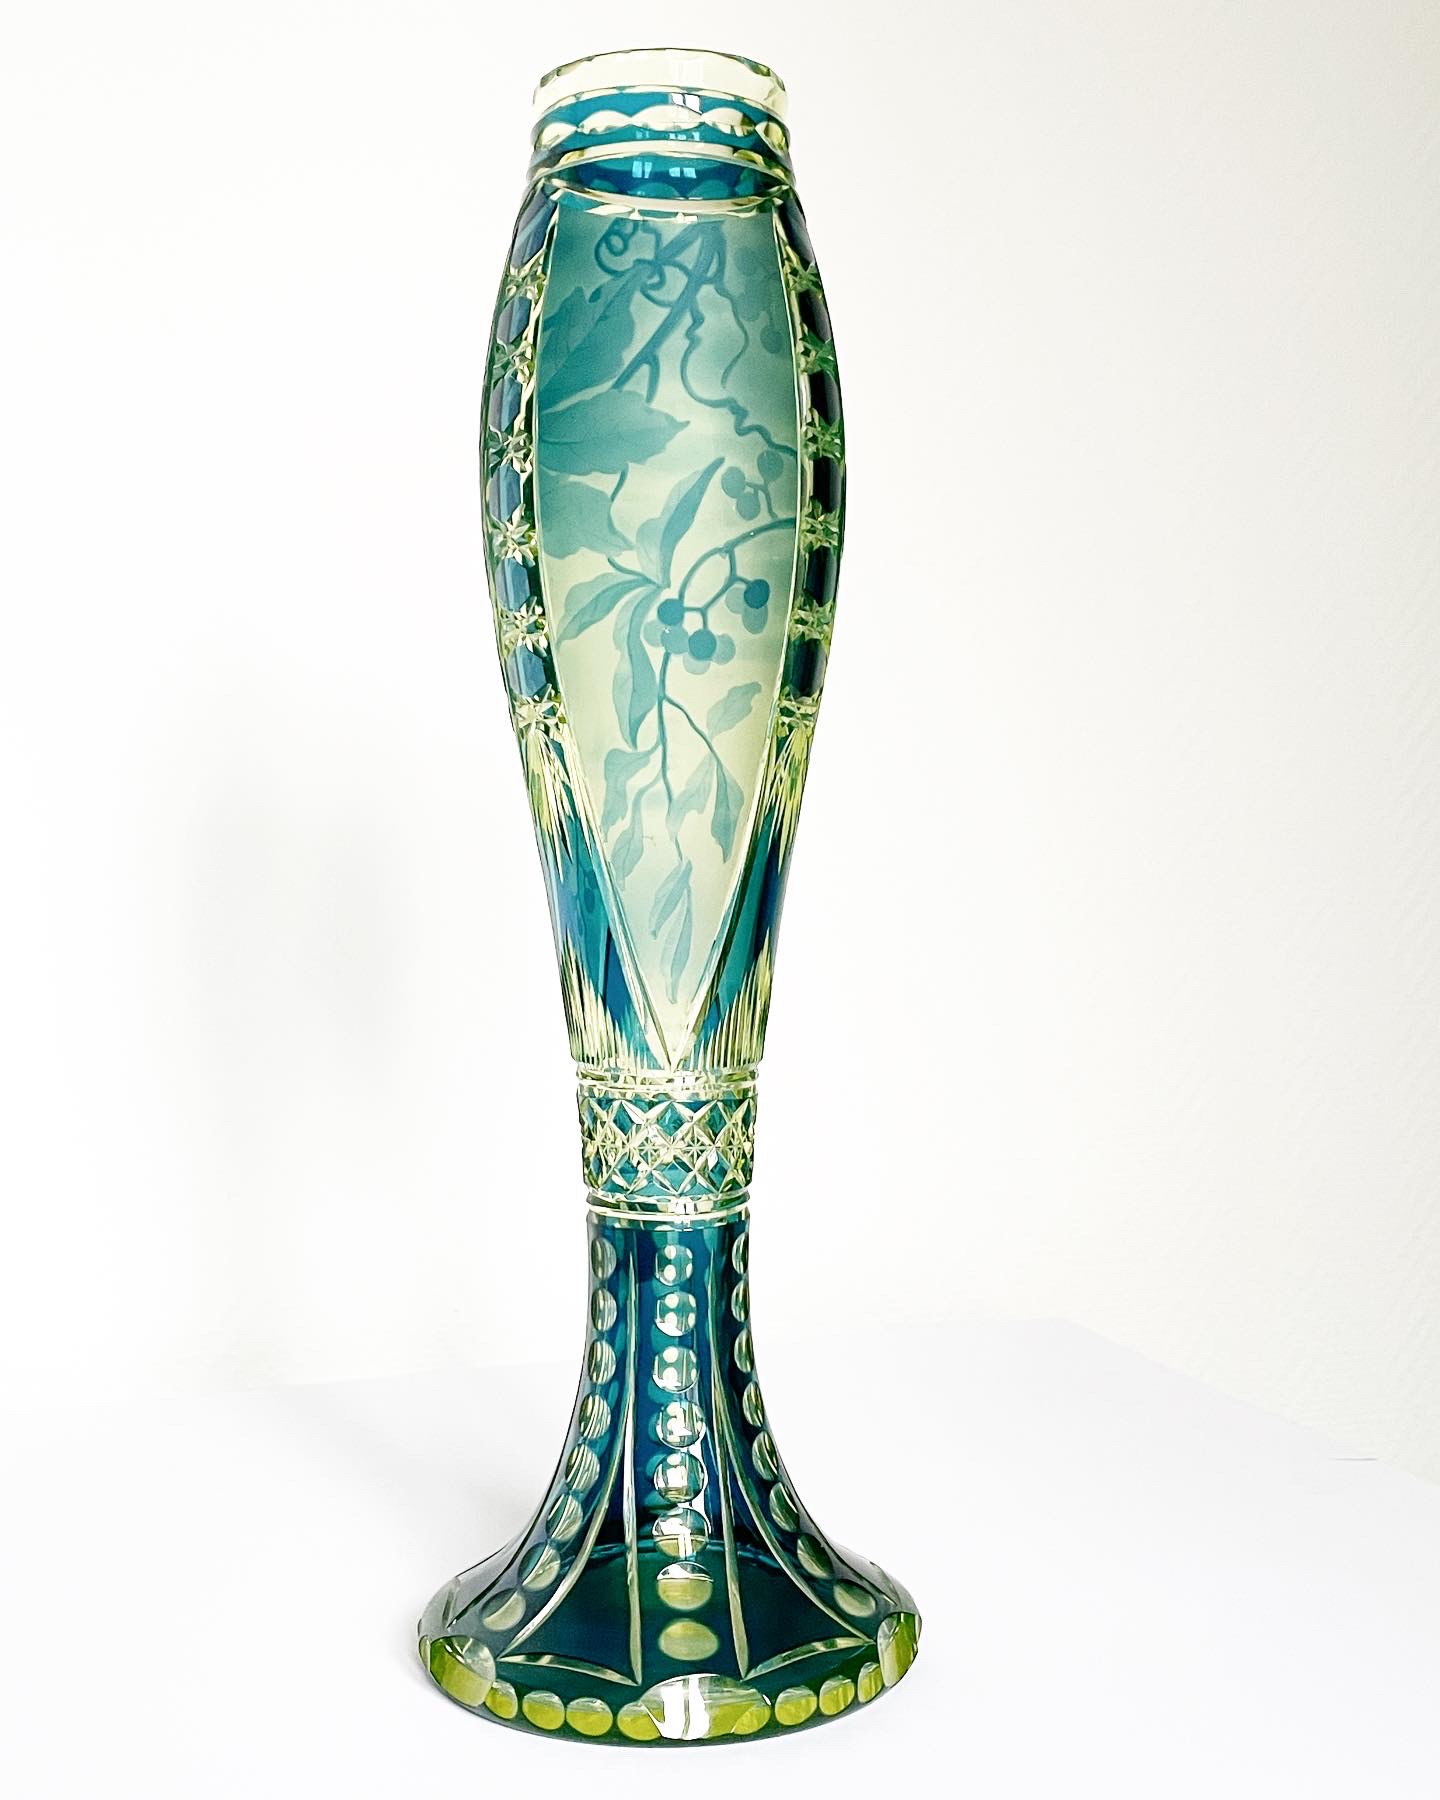 vase-jonghen-val-saint-lambert-urane-bleu-pétrole-art-nouveau-collection-cristal-léon-ledru-dégagé-acide-aurore-morisse-antiquaire-marchand-art-liège-paris4